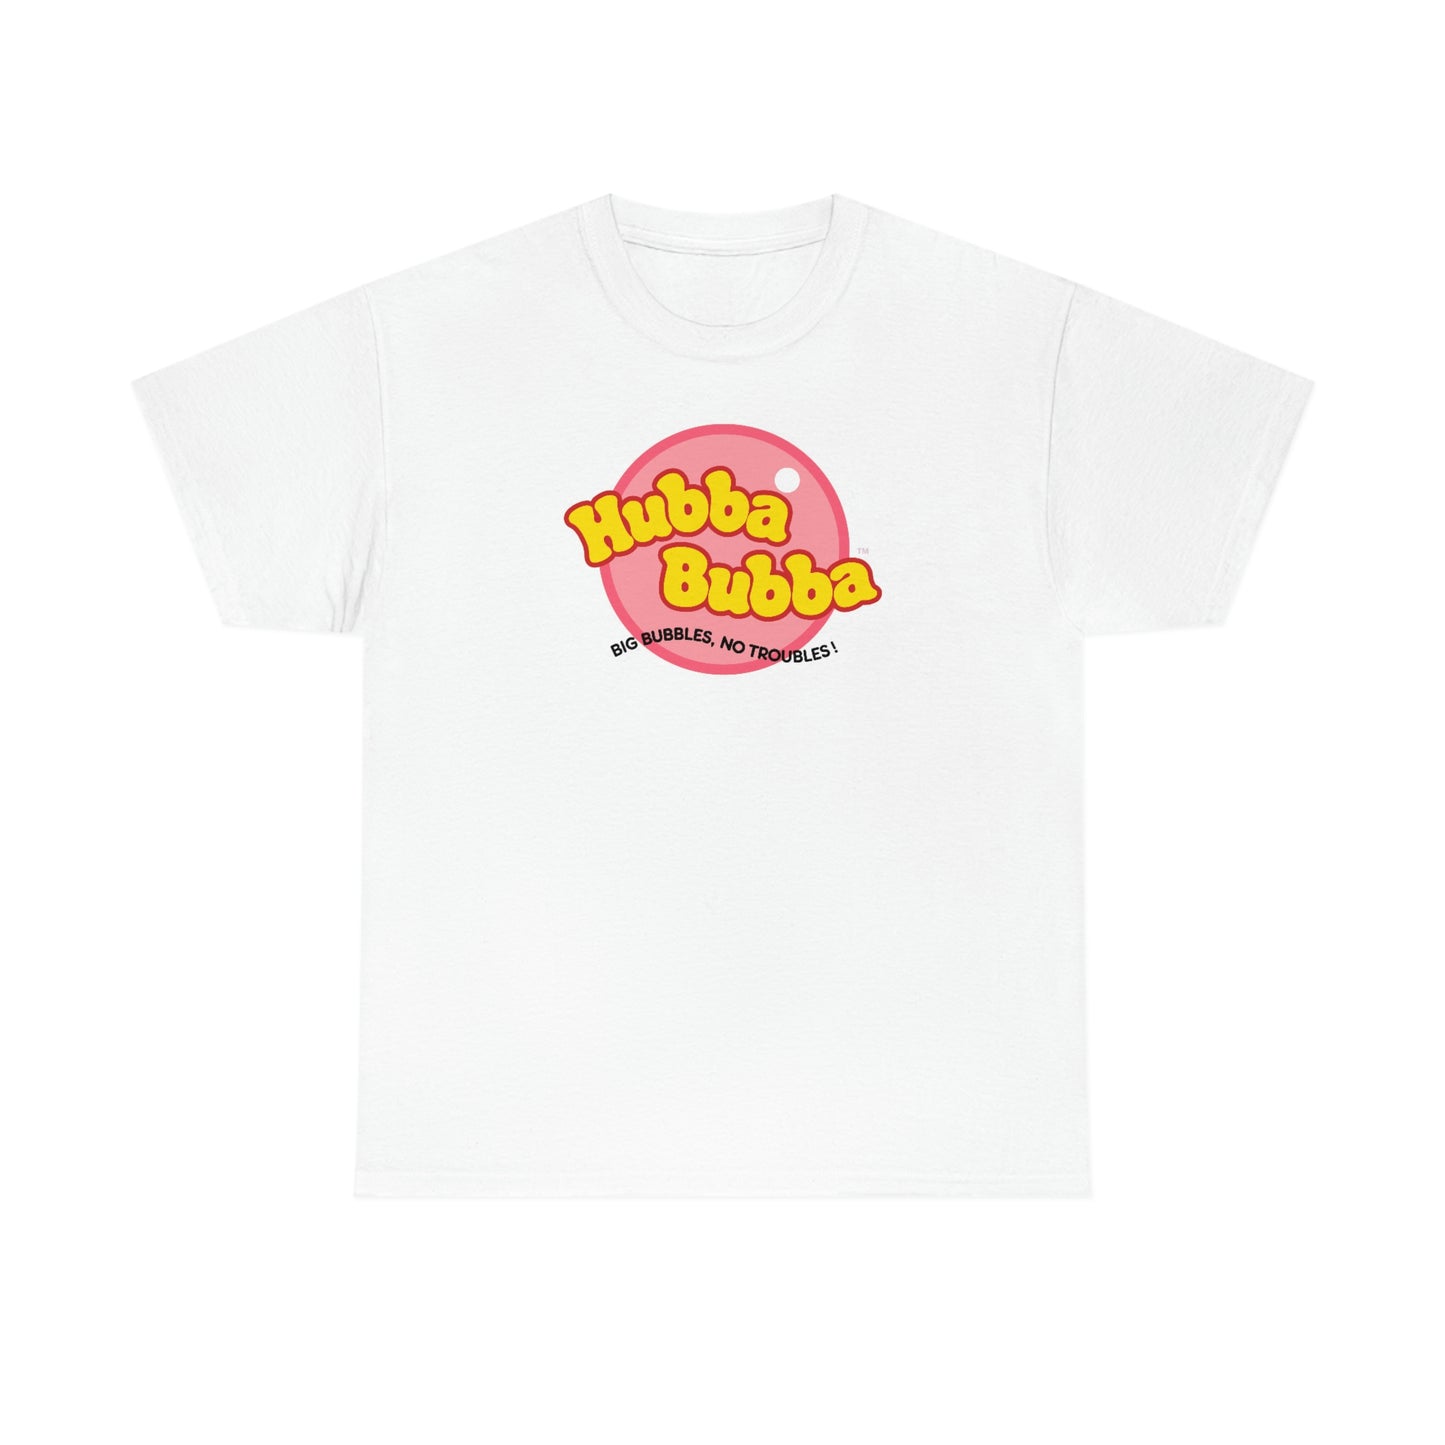 Hubba Bubba T-Shirt